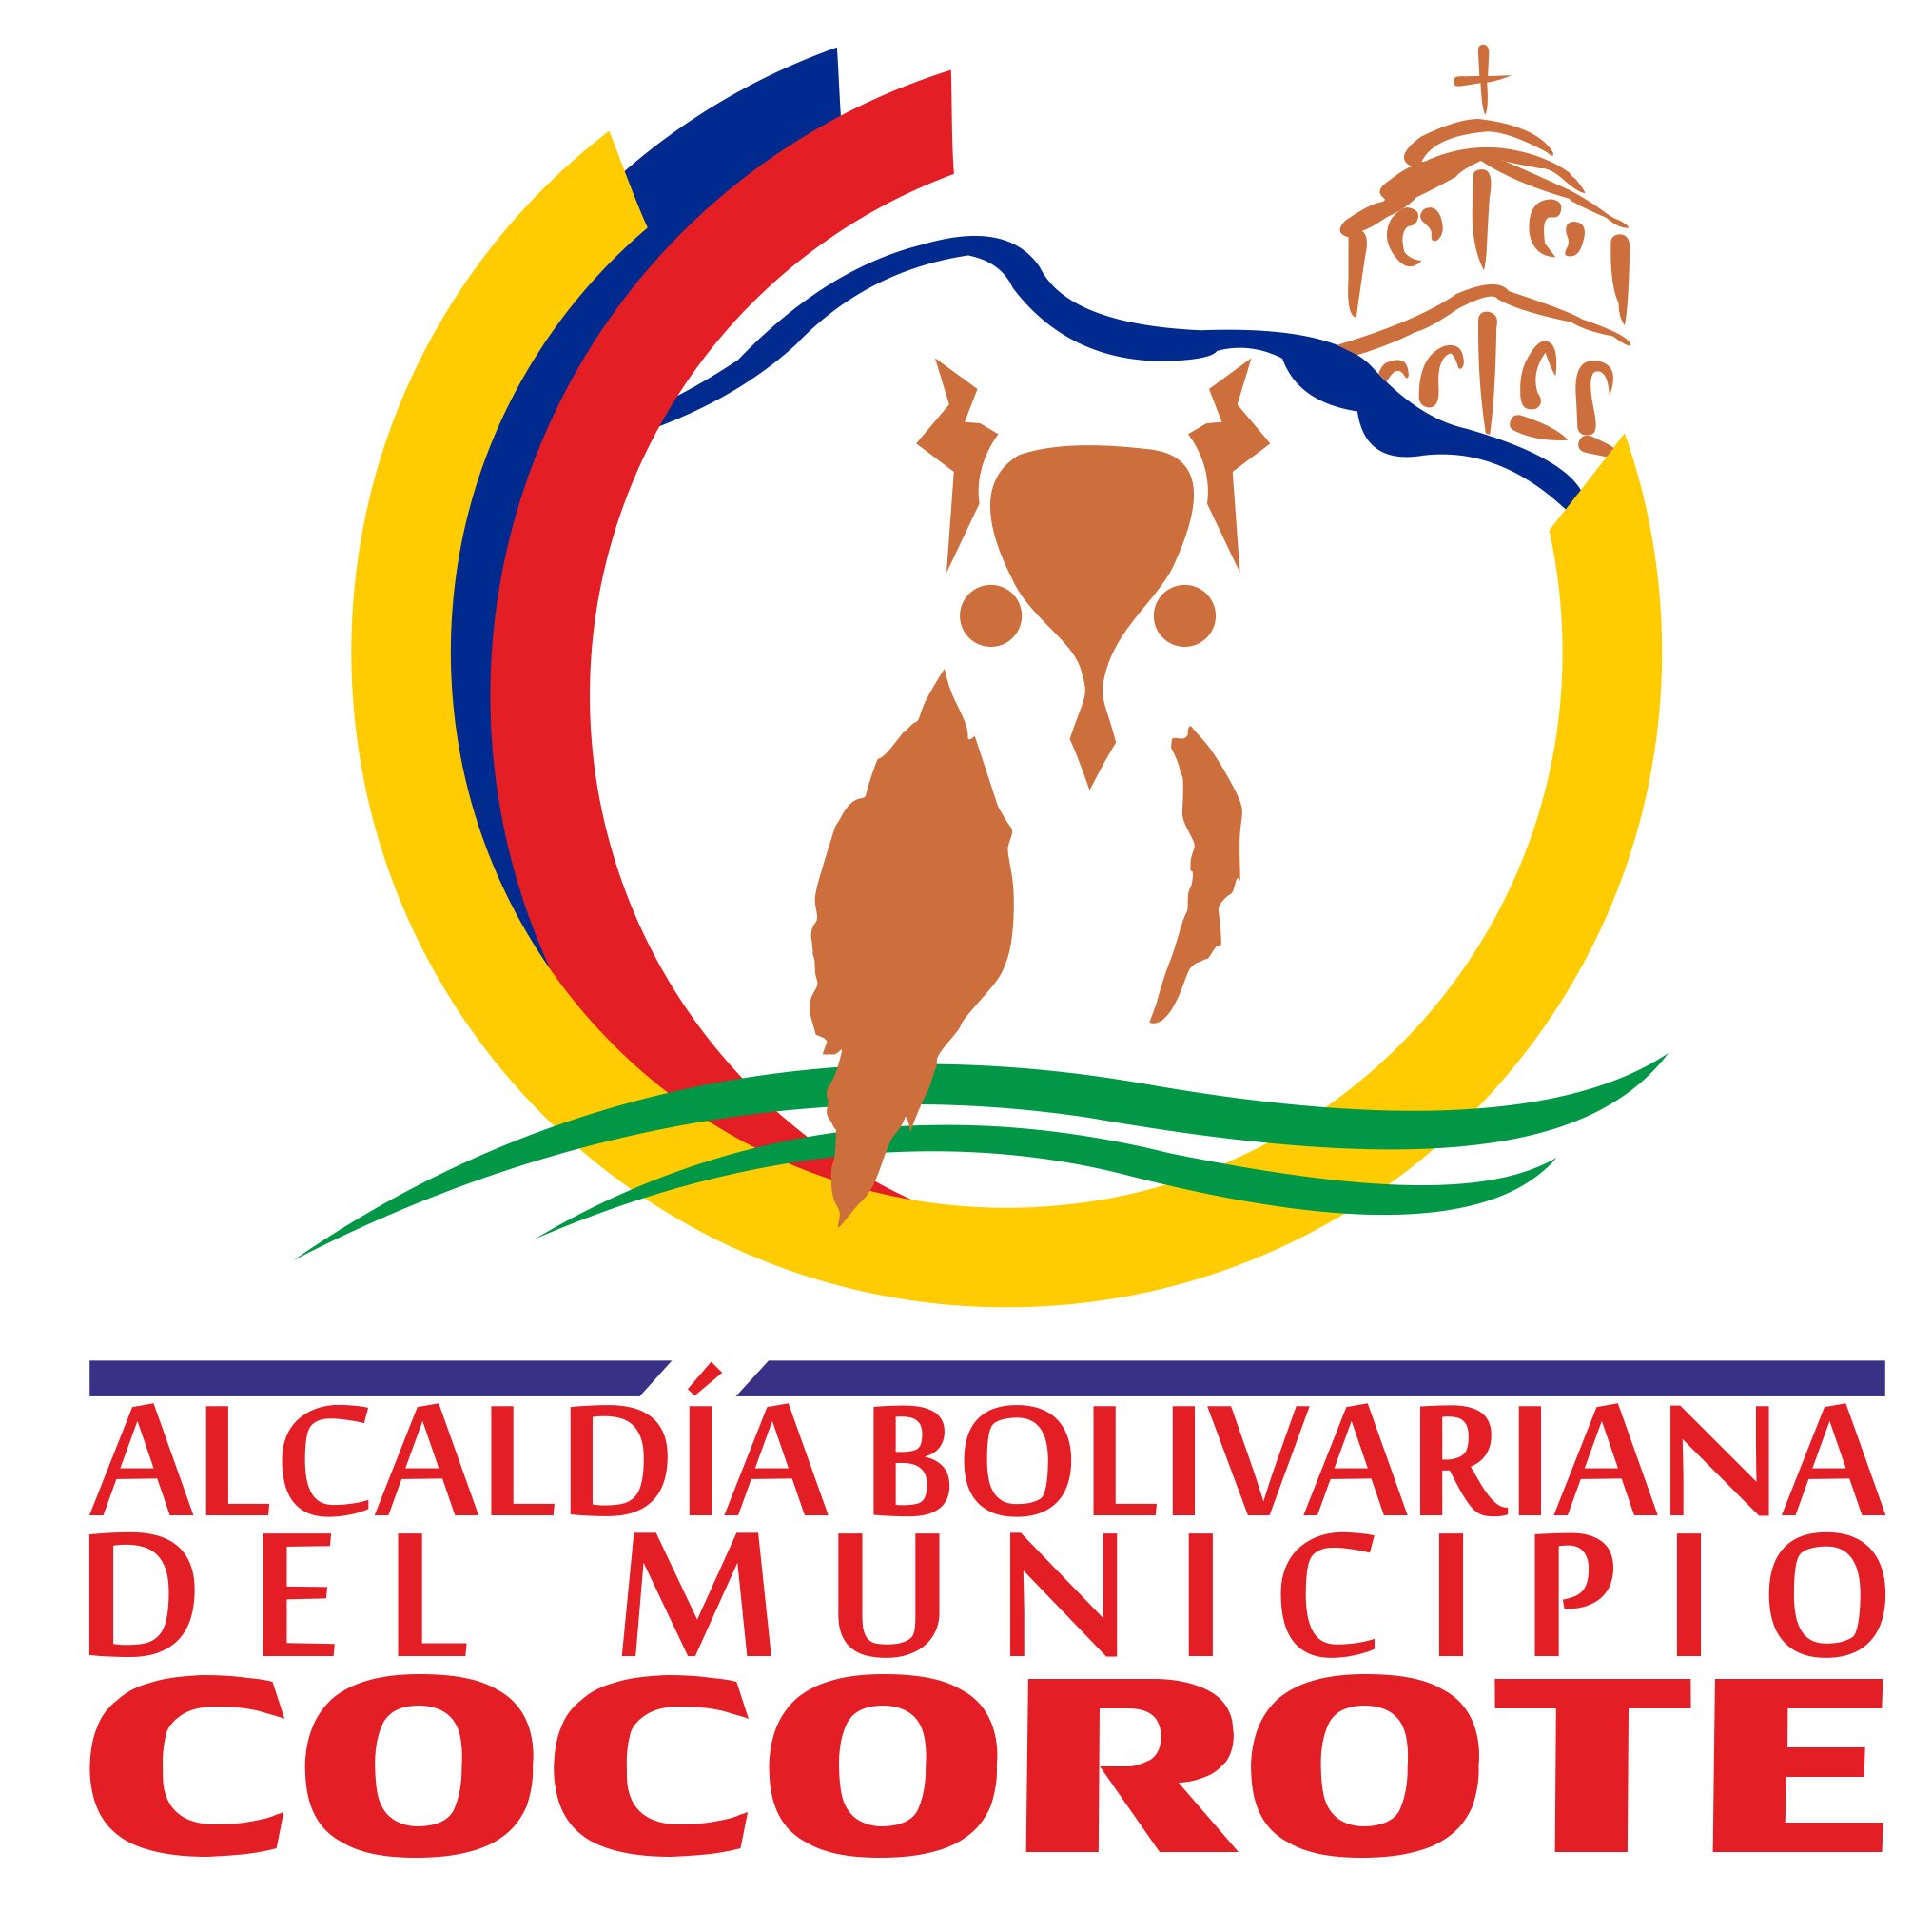 Alcaldía Bolivariana del municipio Cocorote estado Yaracuy. Trabajamos por y para el pueblo cocoroteño. ¡Eficiencia Socialista Para Todos..!